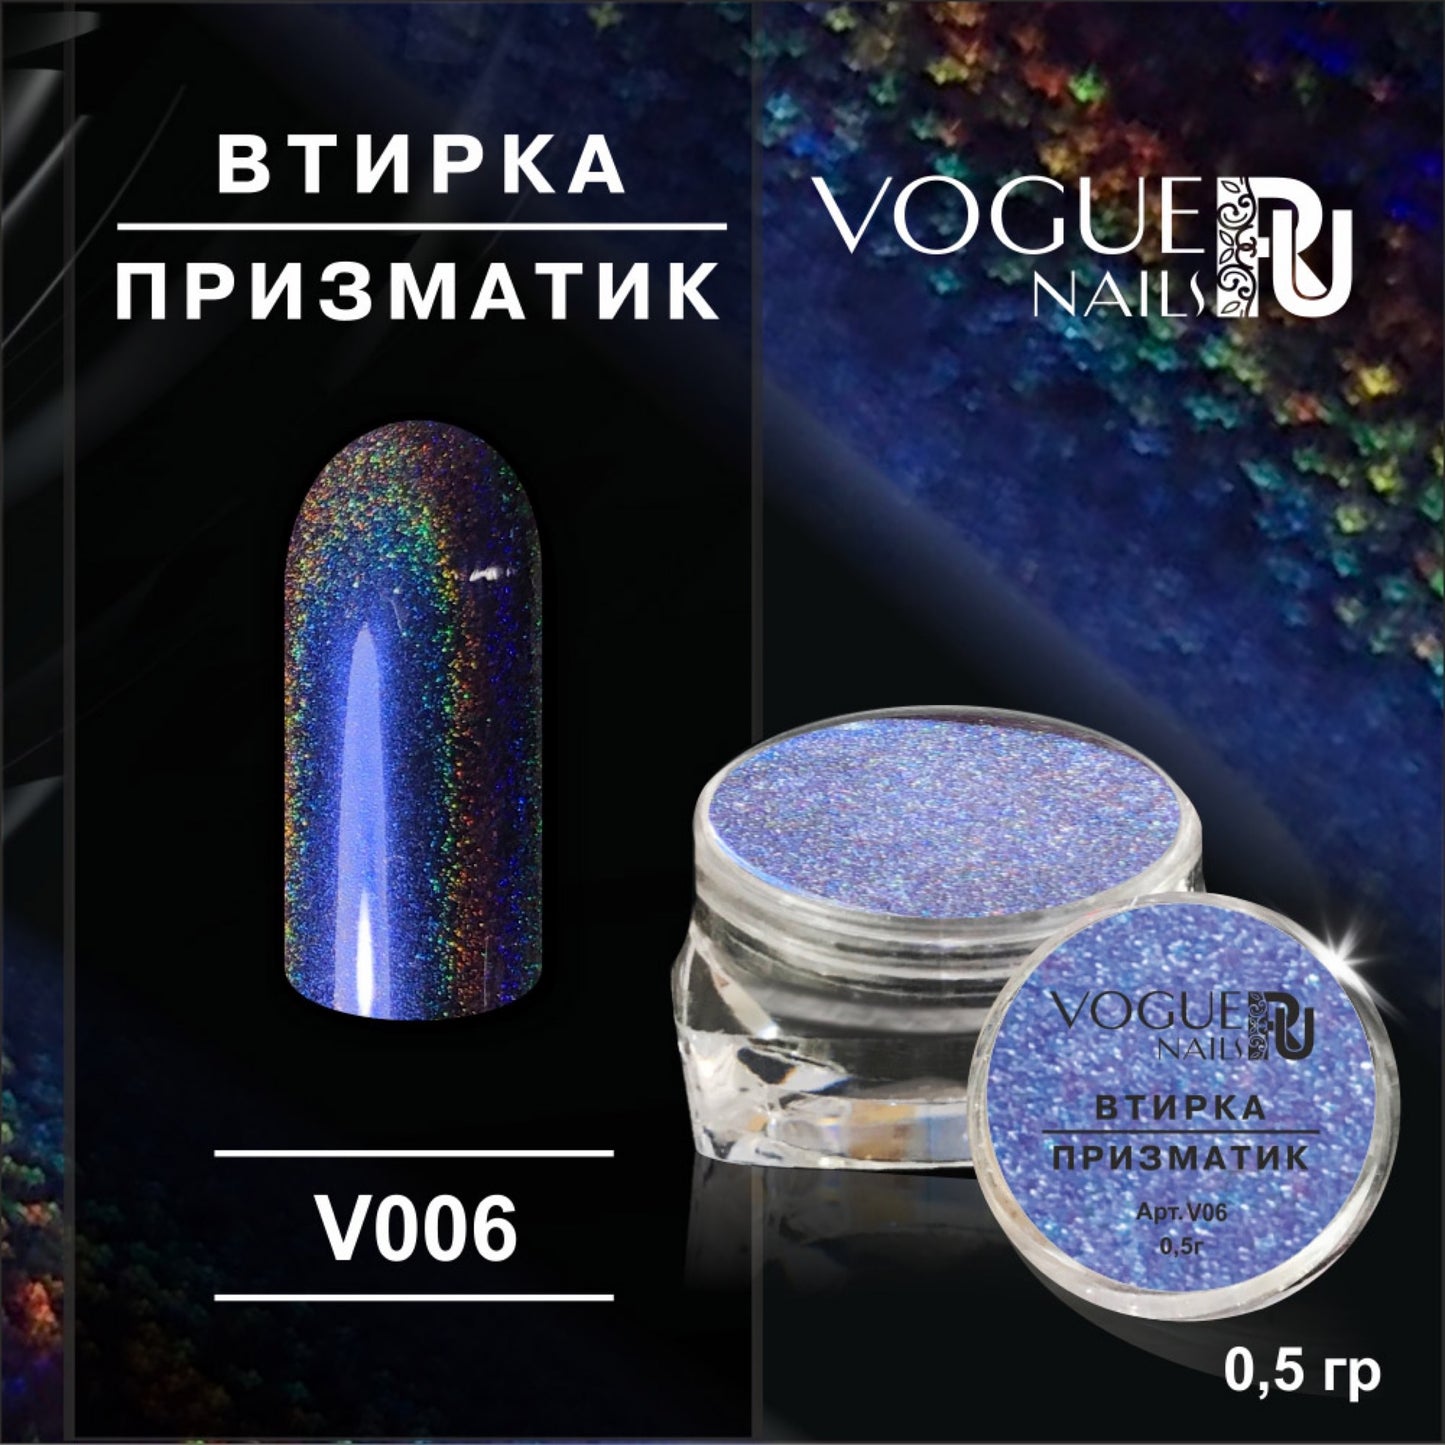 Powder Prismatic №6 Vogue Nails 0.5g